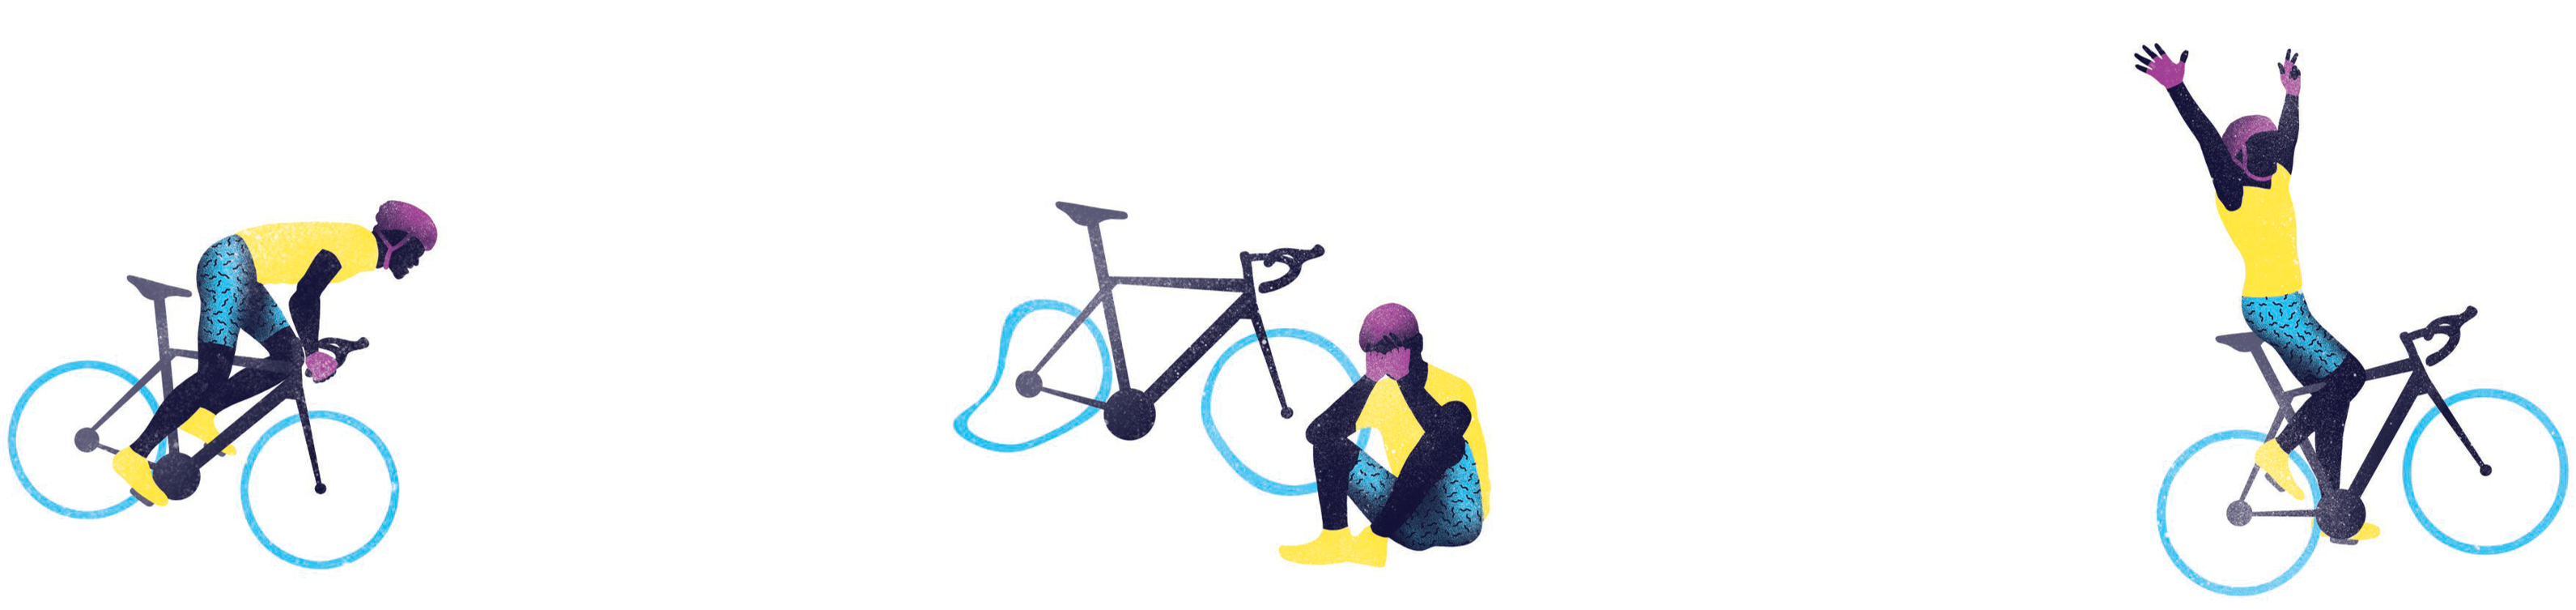 Drei Grafiken, auf denen ein Rennradfahrer stürzt, dann niedergeschlagen am Boden sitzt und zuletzt jubelnd auf seinem Rad weiterfährt.